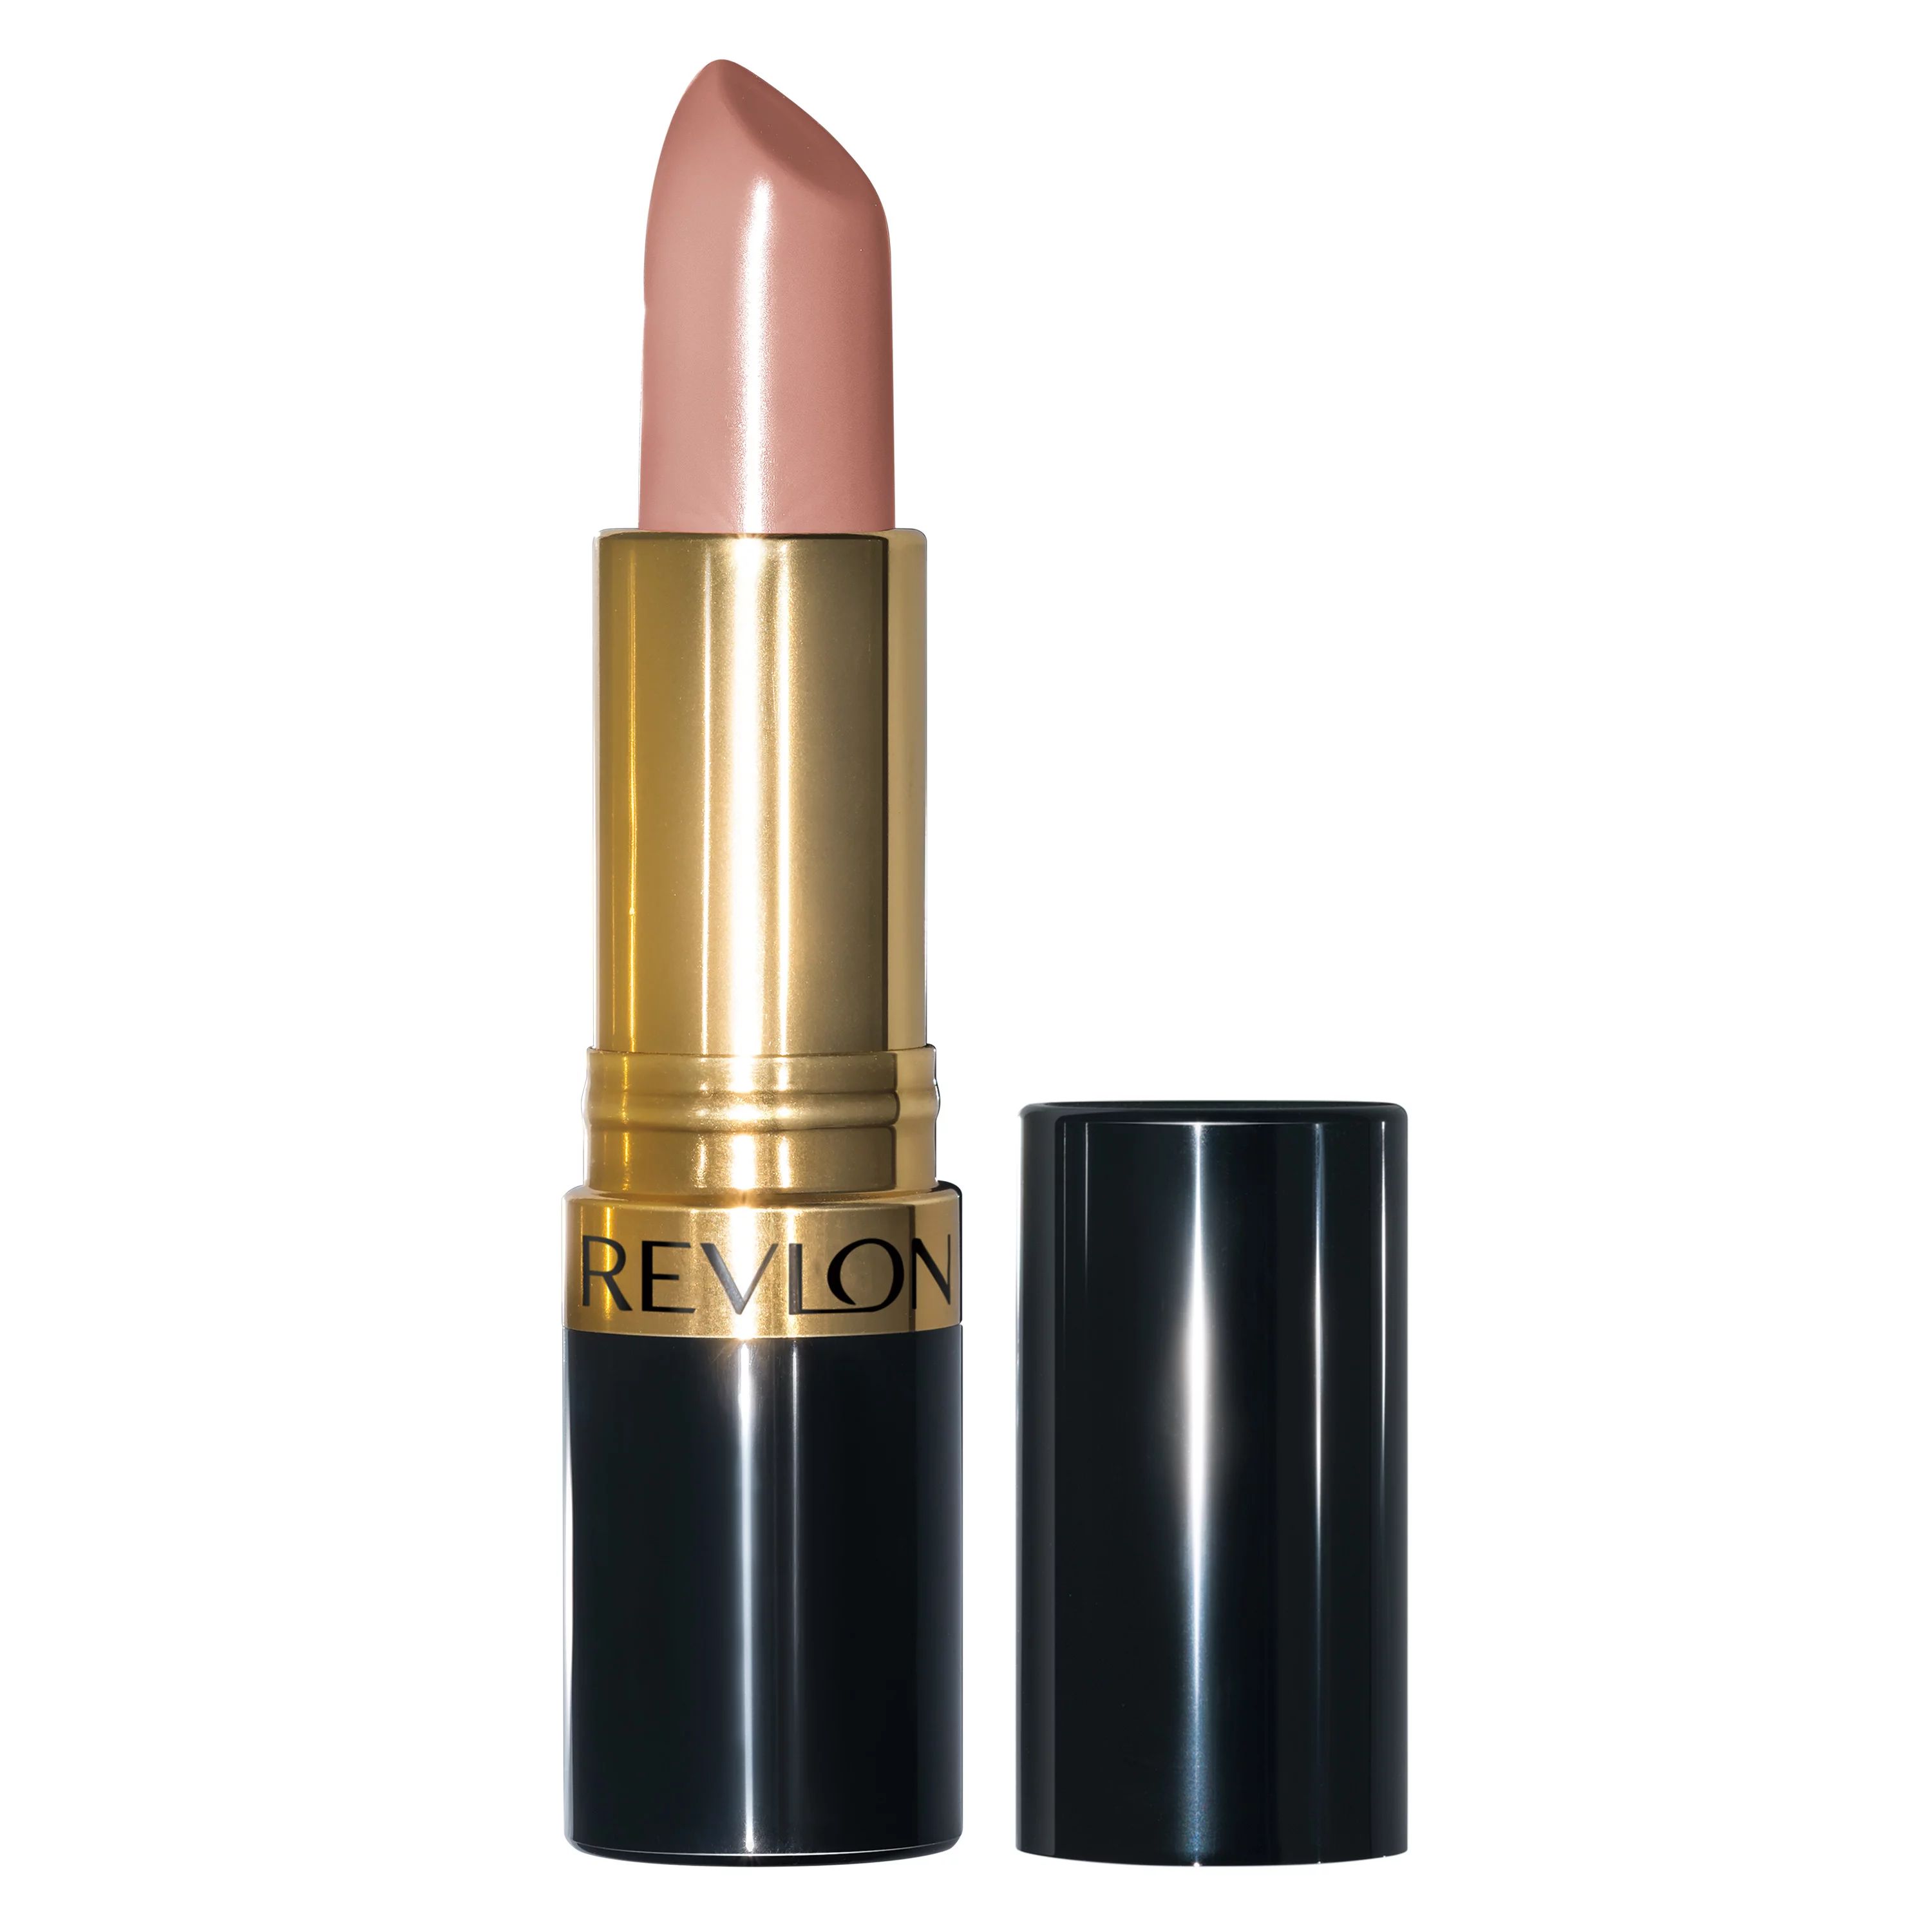 Revlon Super Lustrous Lipstick with Vitamin E and Avocado Oil, 755 Bare It All, 0.15 oz - Walmart... | Walmart (US)